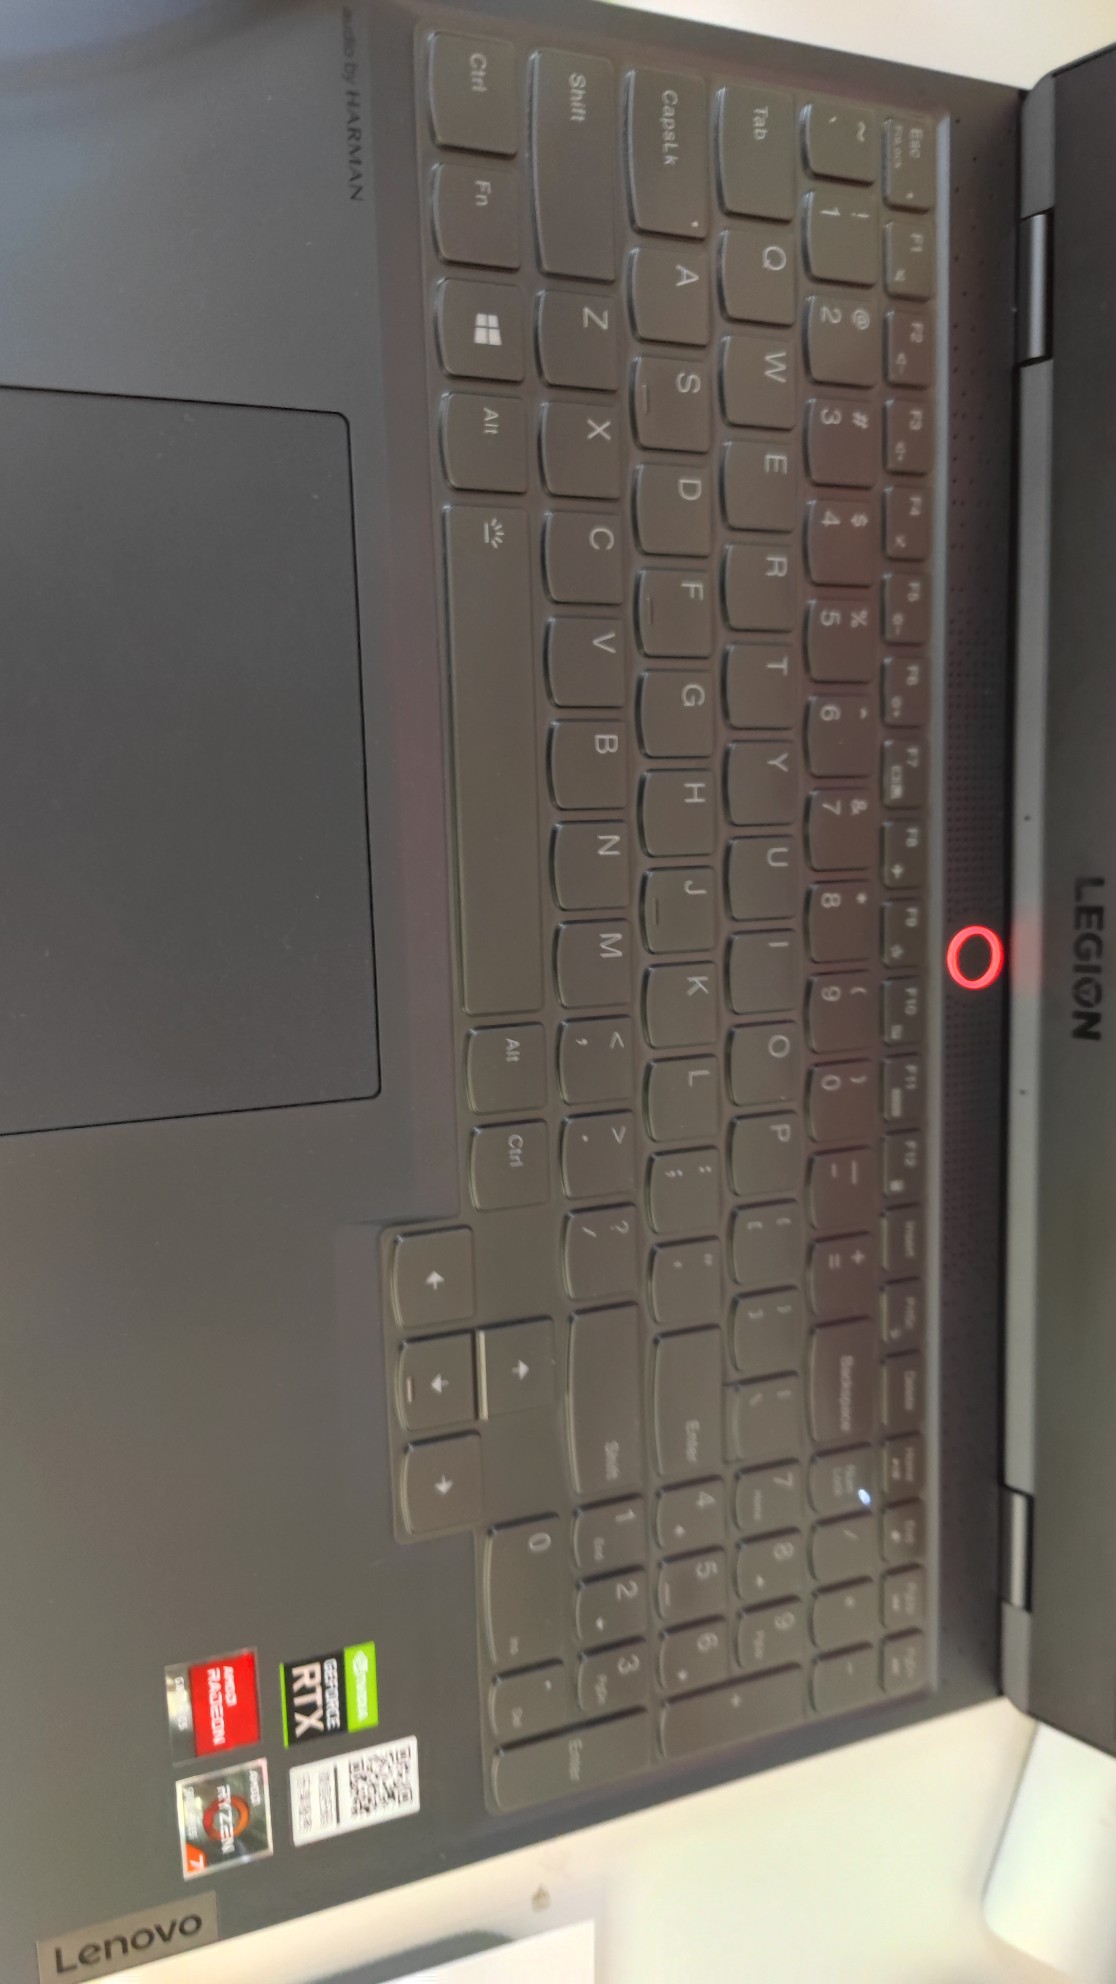 联想y700笔记本键盘保护膜深度评测 不多用几天你体验不到的!